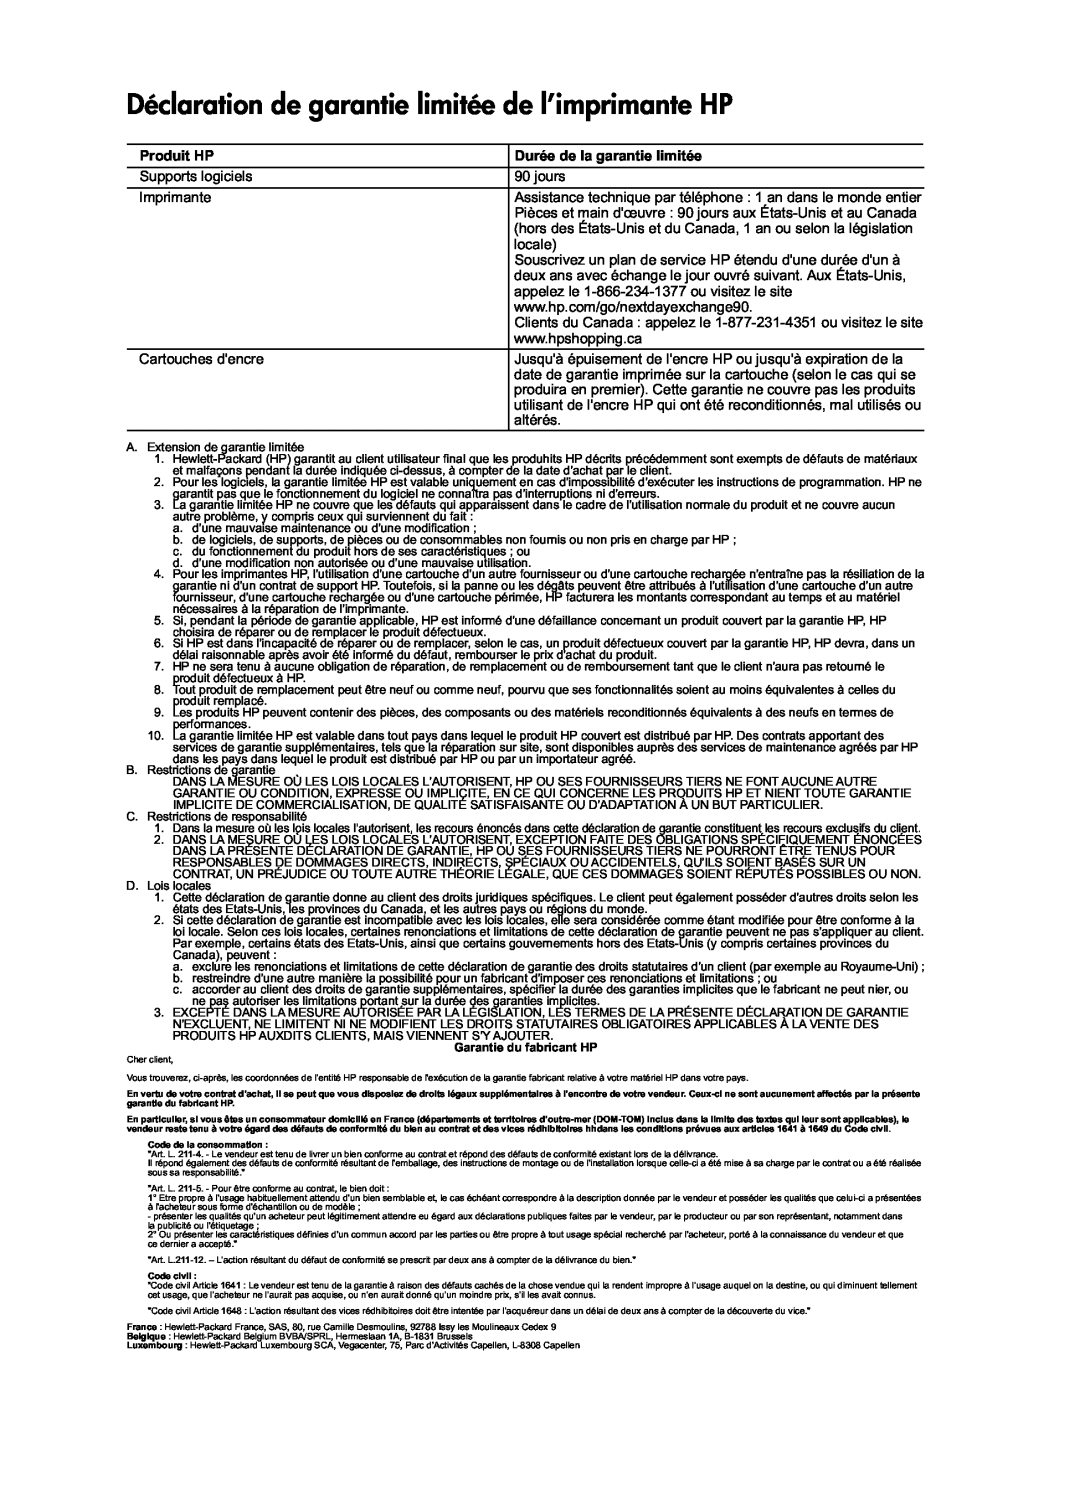 HP 1051, 1050 - J410a manual Déclaration de garantie limitée de l’imprimante HP, Produit HP, Durée de la garantie limitée 